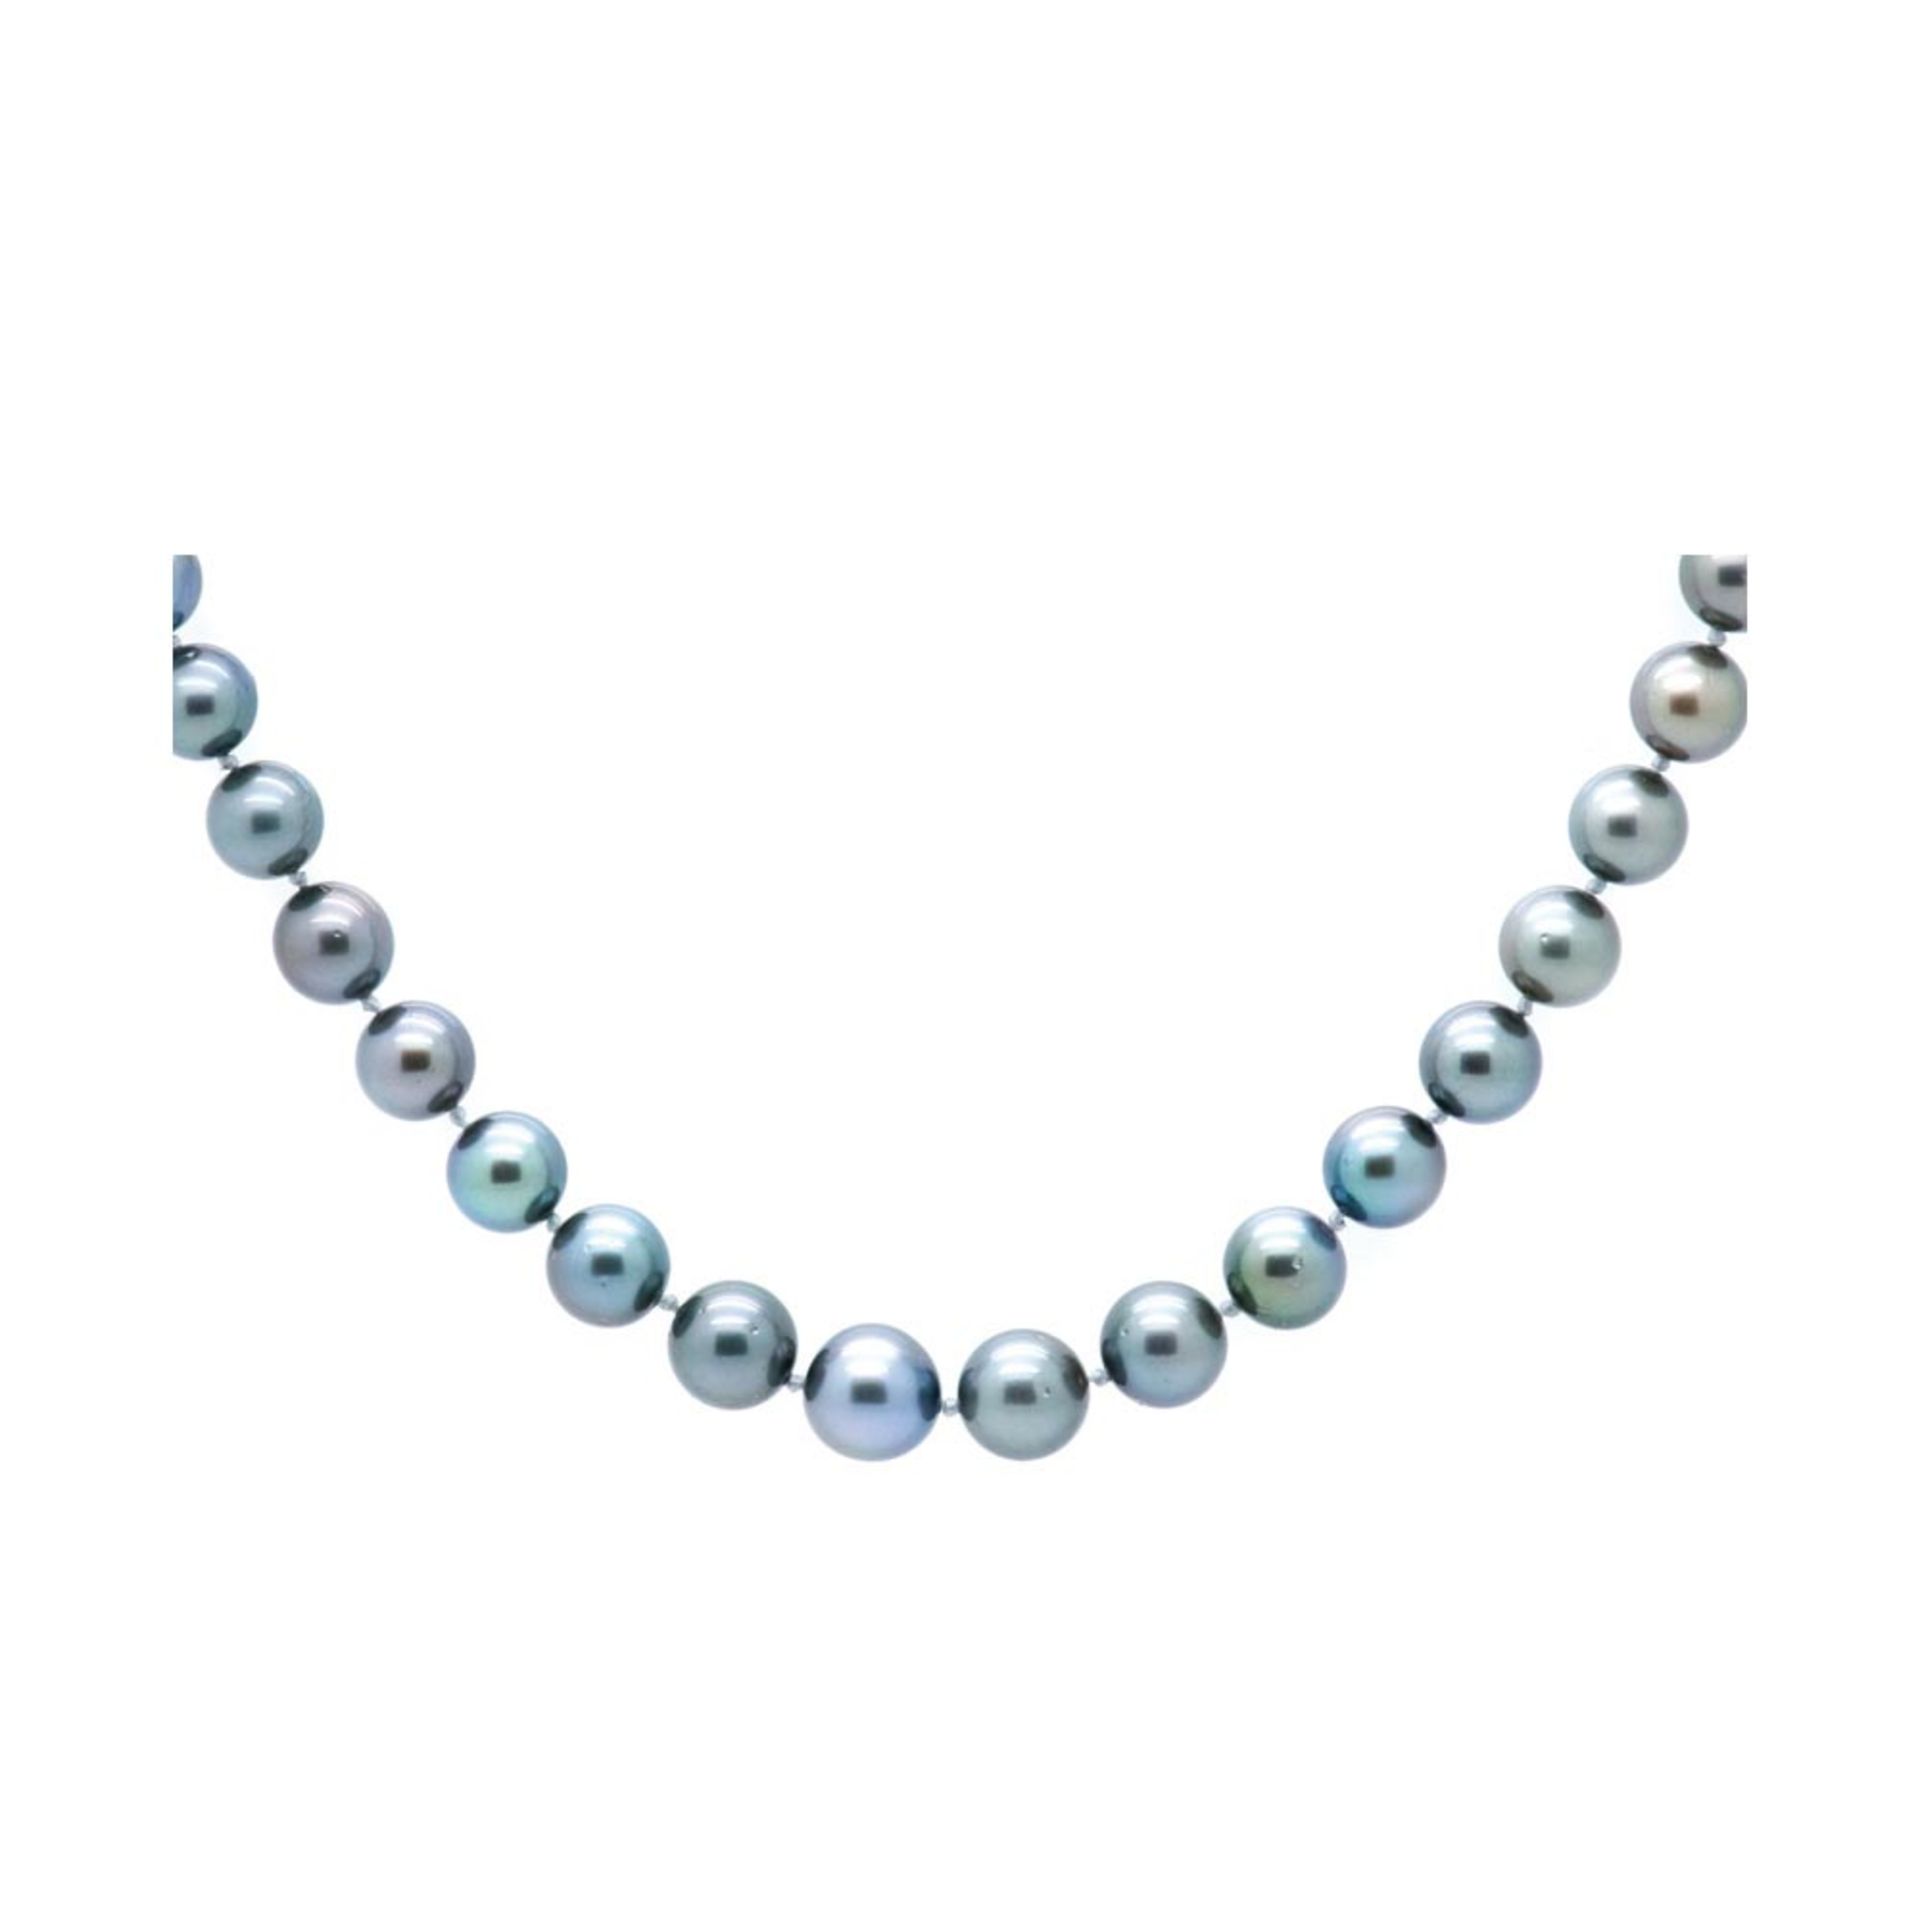 Collar de perlas Tahití en degradé 13-10 mm. con cierre diseño esférico en oro blanco. Long.: 47